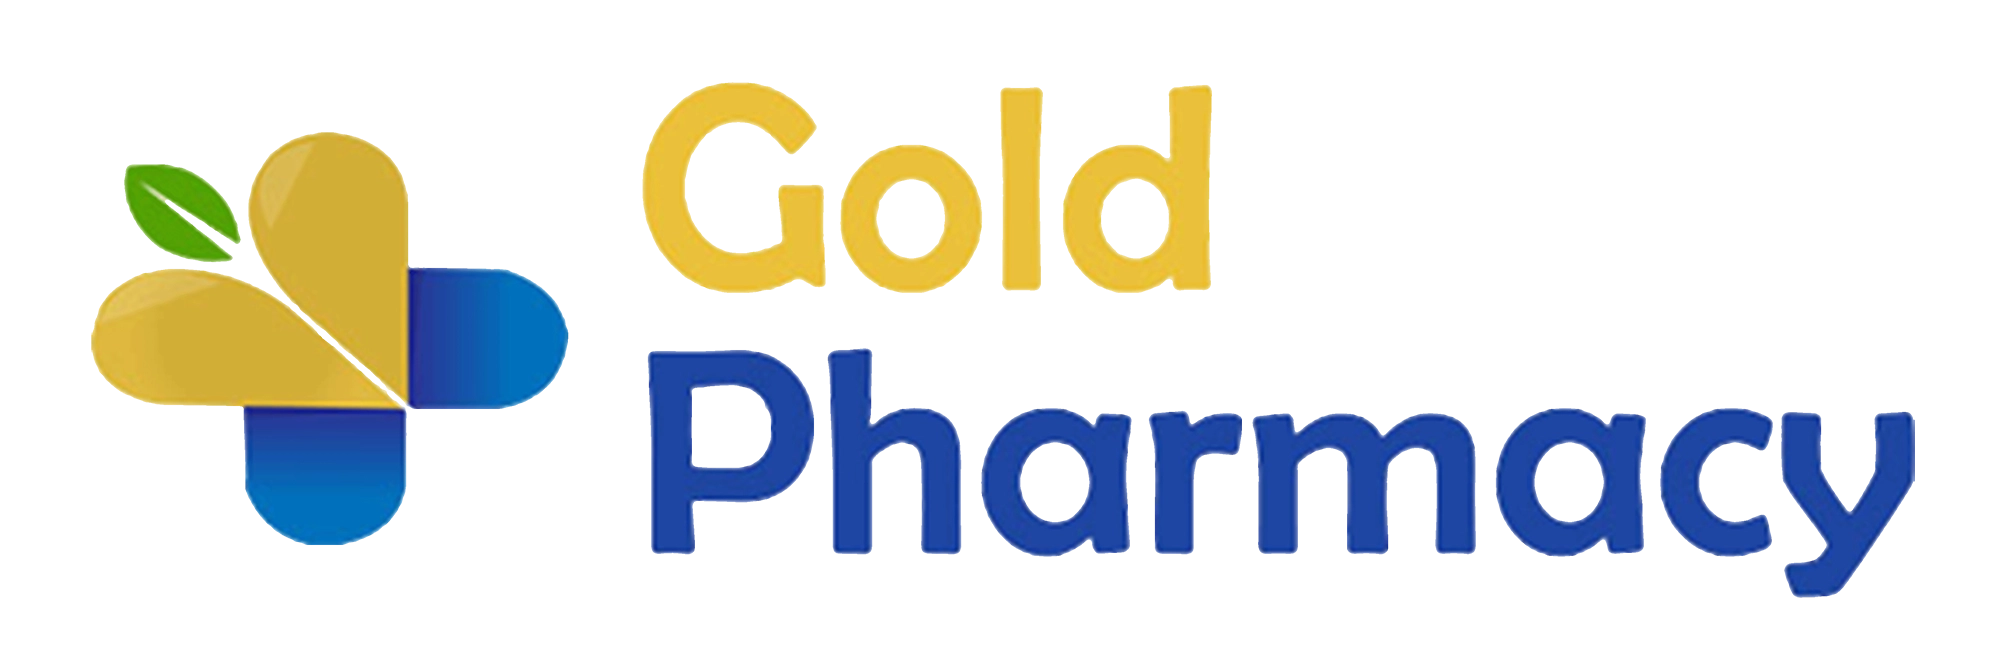 Gold Pharmacy